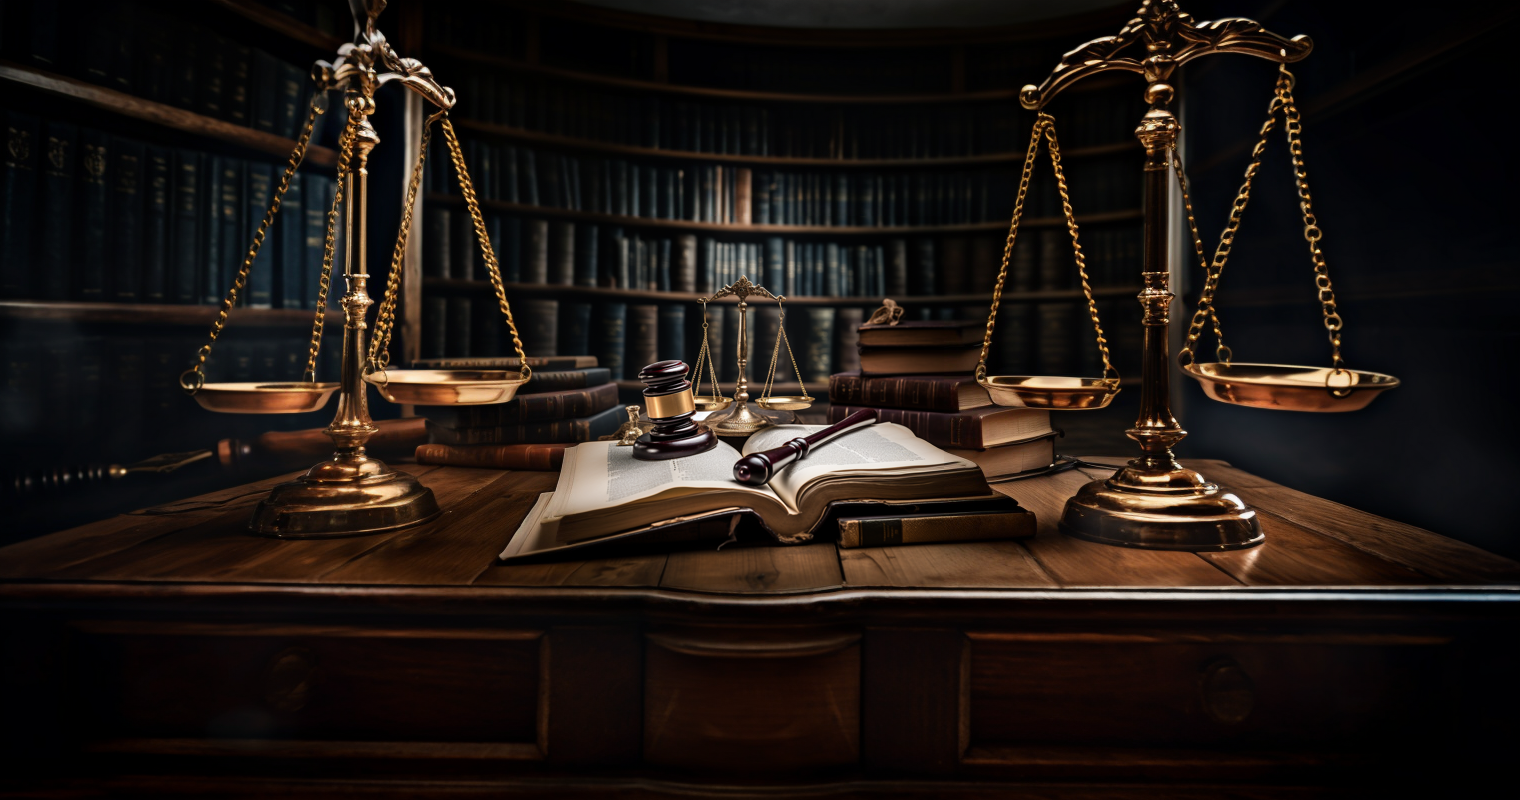 სასამართლოს ღიაობა და გამჭვირვალობა - ახირება თუ მართლმსაჯულების აუცილებელი პირობა?!